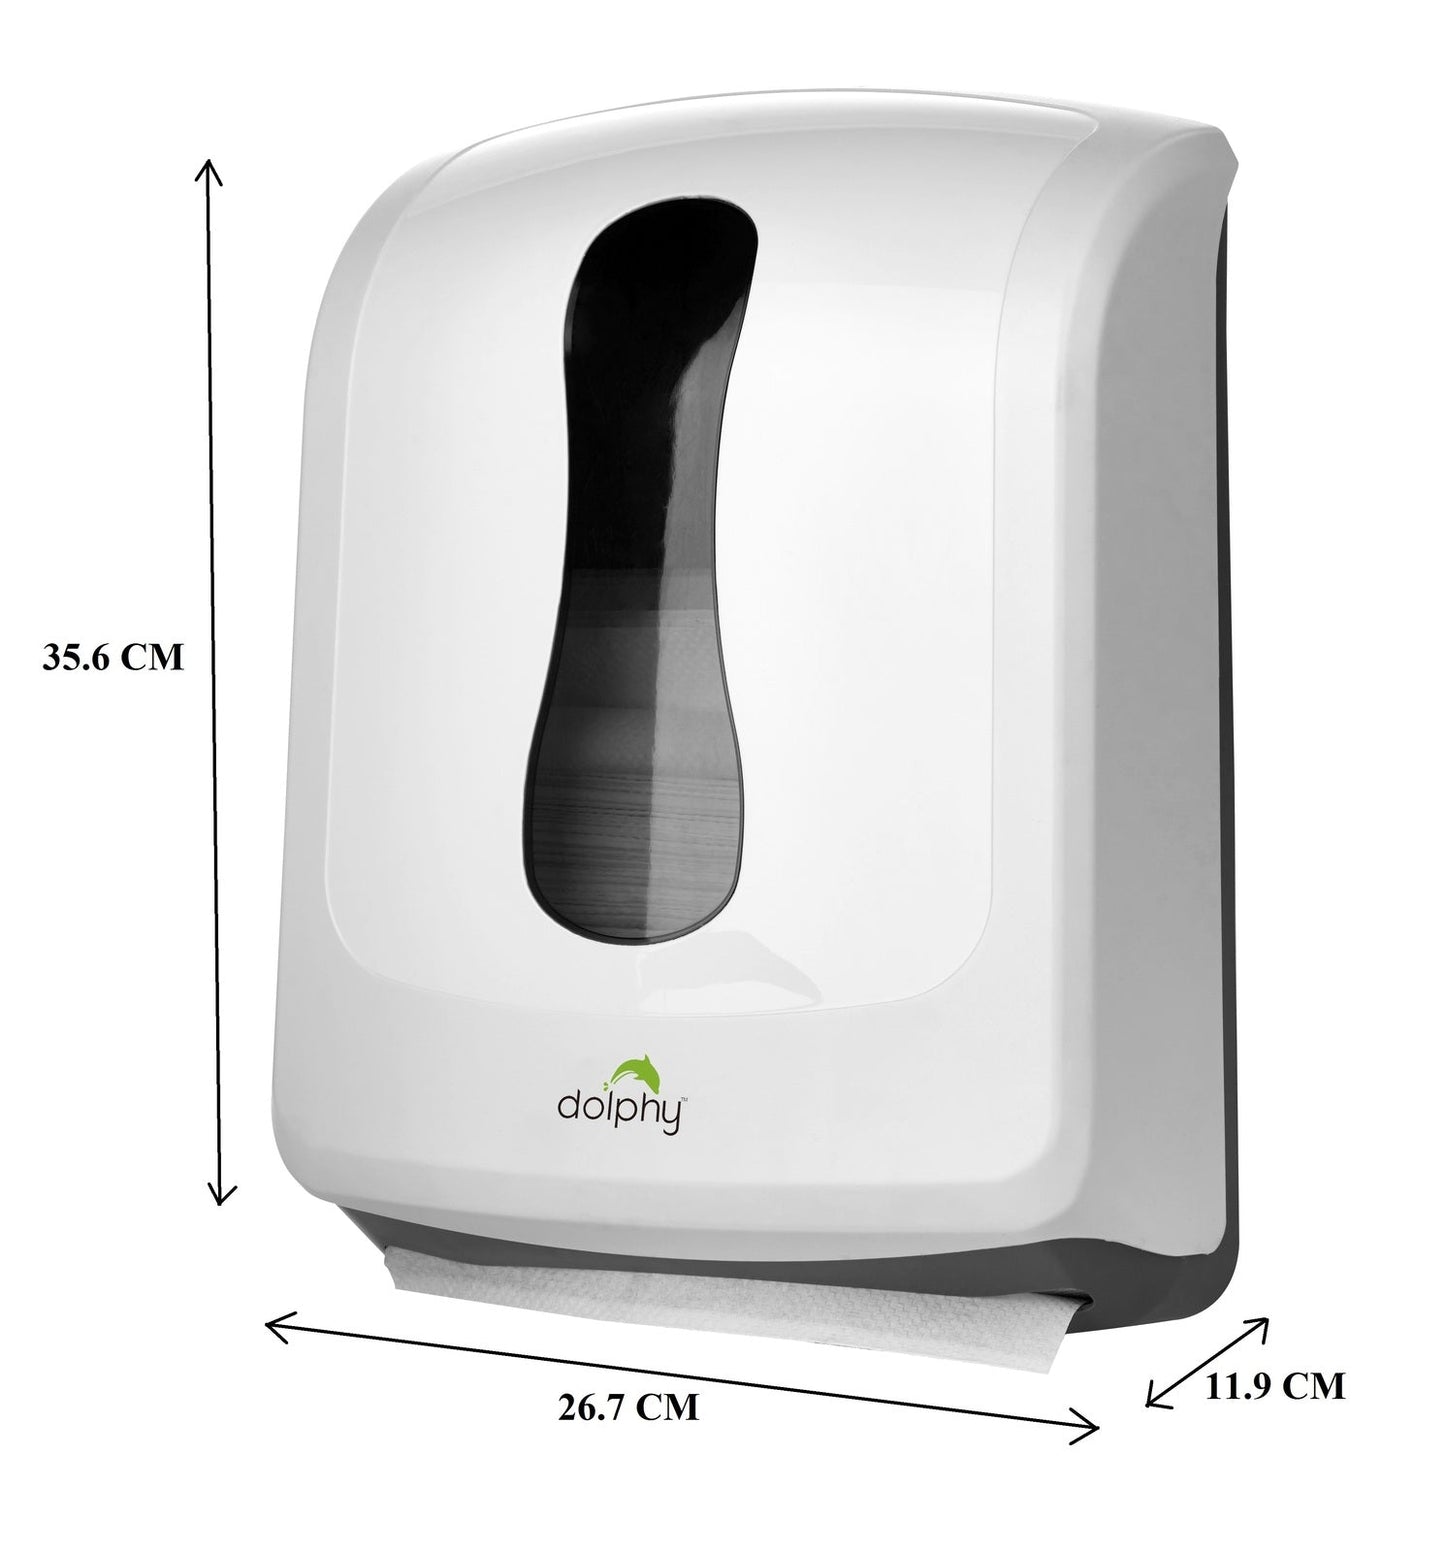 Slimline Paper Towel Dispenser  - White